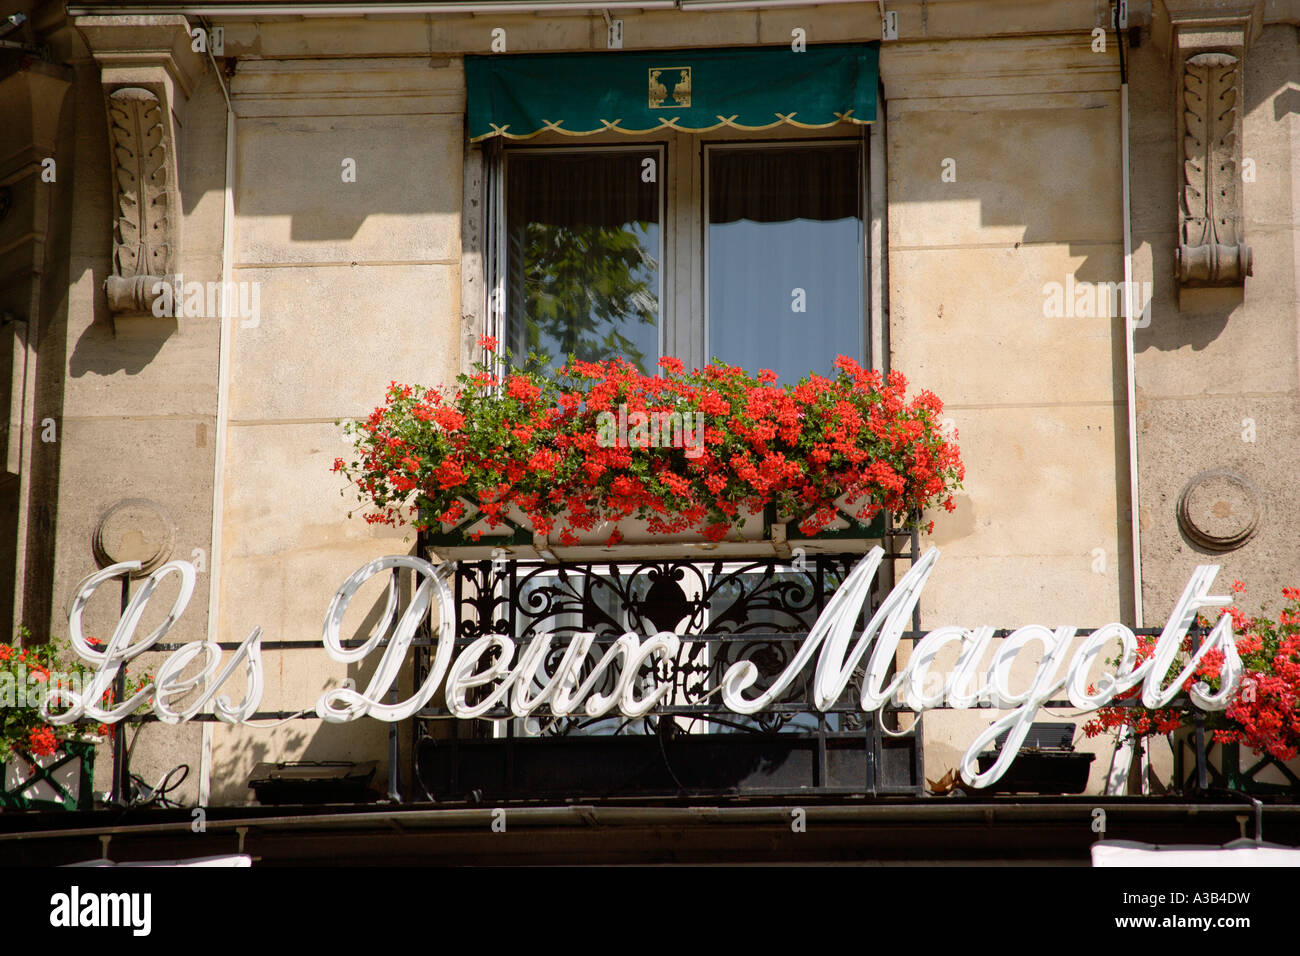 Francia Ile de France Parigi riva sinistra Place St Germain des Pres Les Deux Magots famoso caffè letterario frequentato dai surrealisti Foto Stock